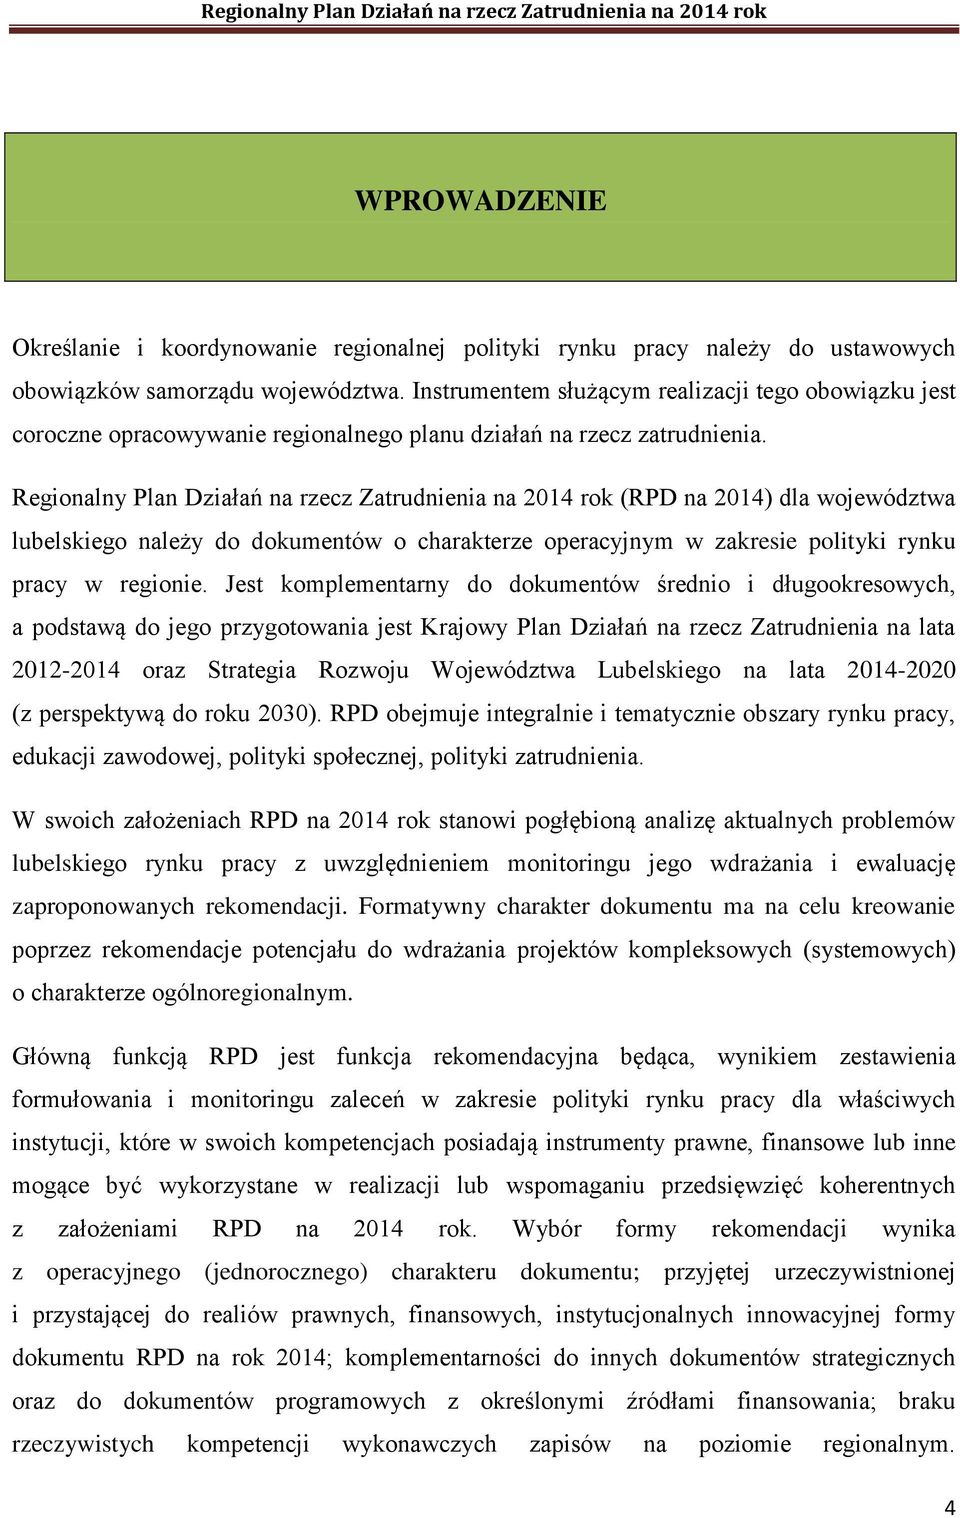 Regionalny Plan Działań na rzecz Zatrudnienia na 2014 rok (RPD na 2014) dla województwa lubelskiego należy do dokumentów o charakterze operacyjnym w zakresie polityki rynku pracy w regionie.